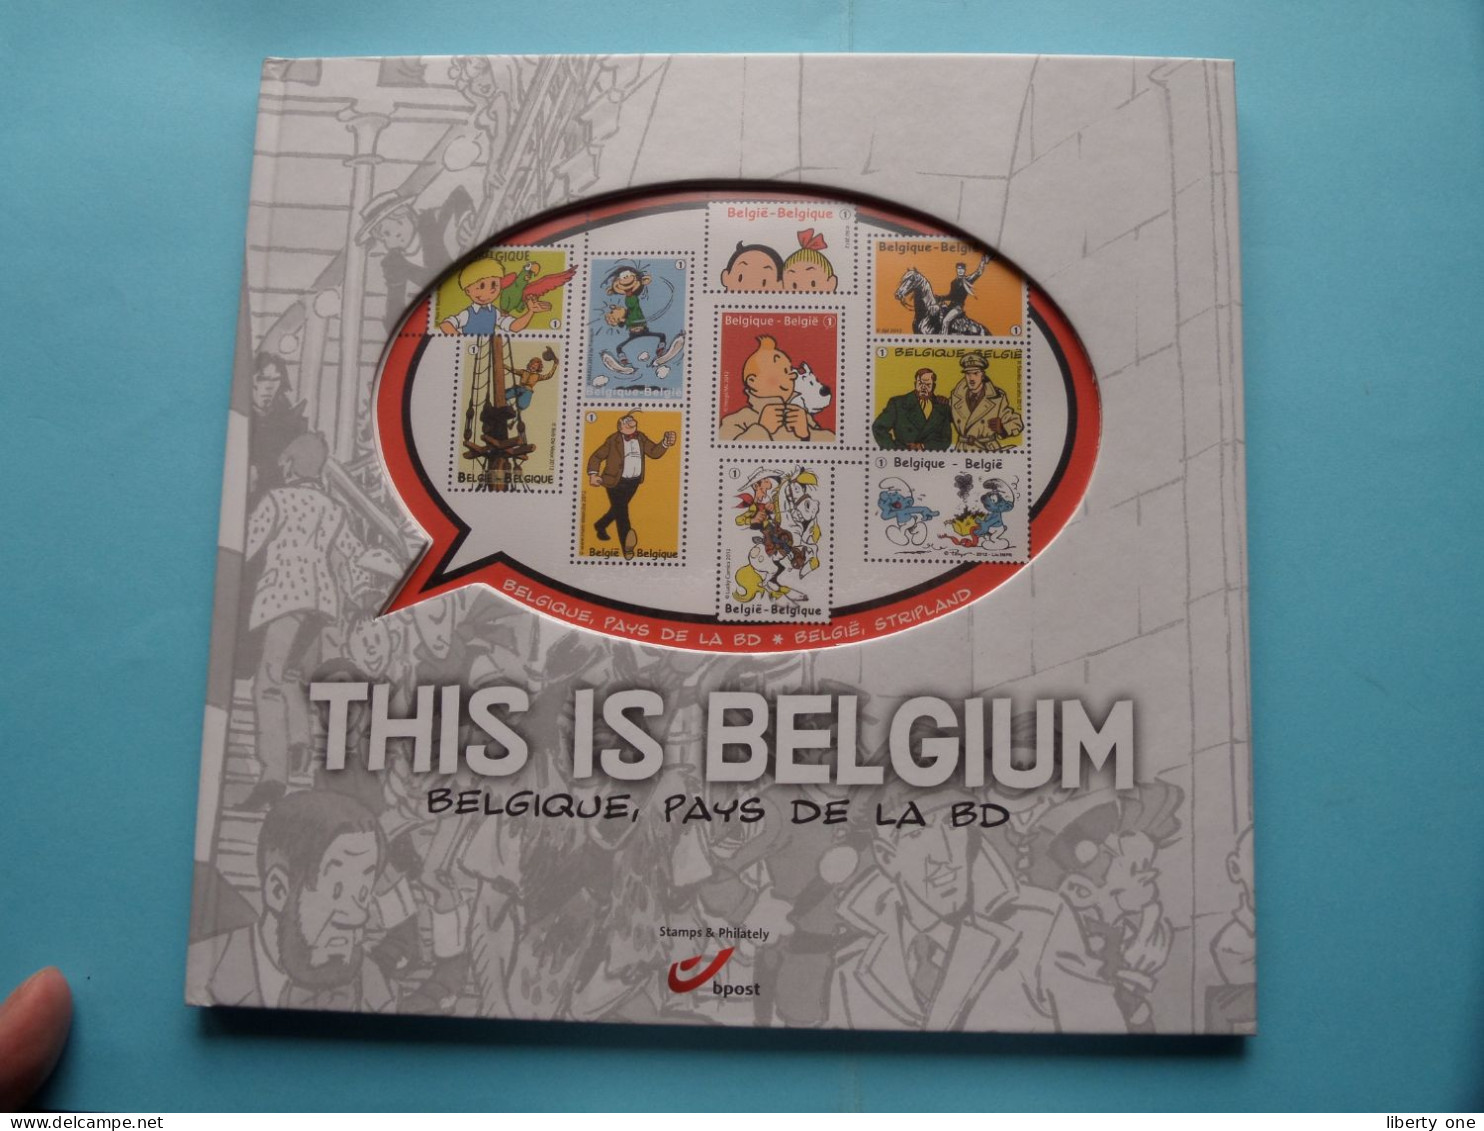 This Is BELGIUM ( N° 10 ) Belgique, Pays De La BD > 2003-2012 >>> Zonder / SANS Timbres / Ex Vide / Leeg Album ! - Philately And Postal History